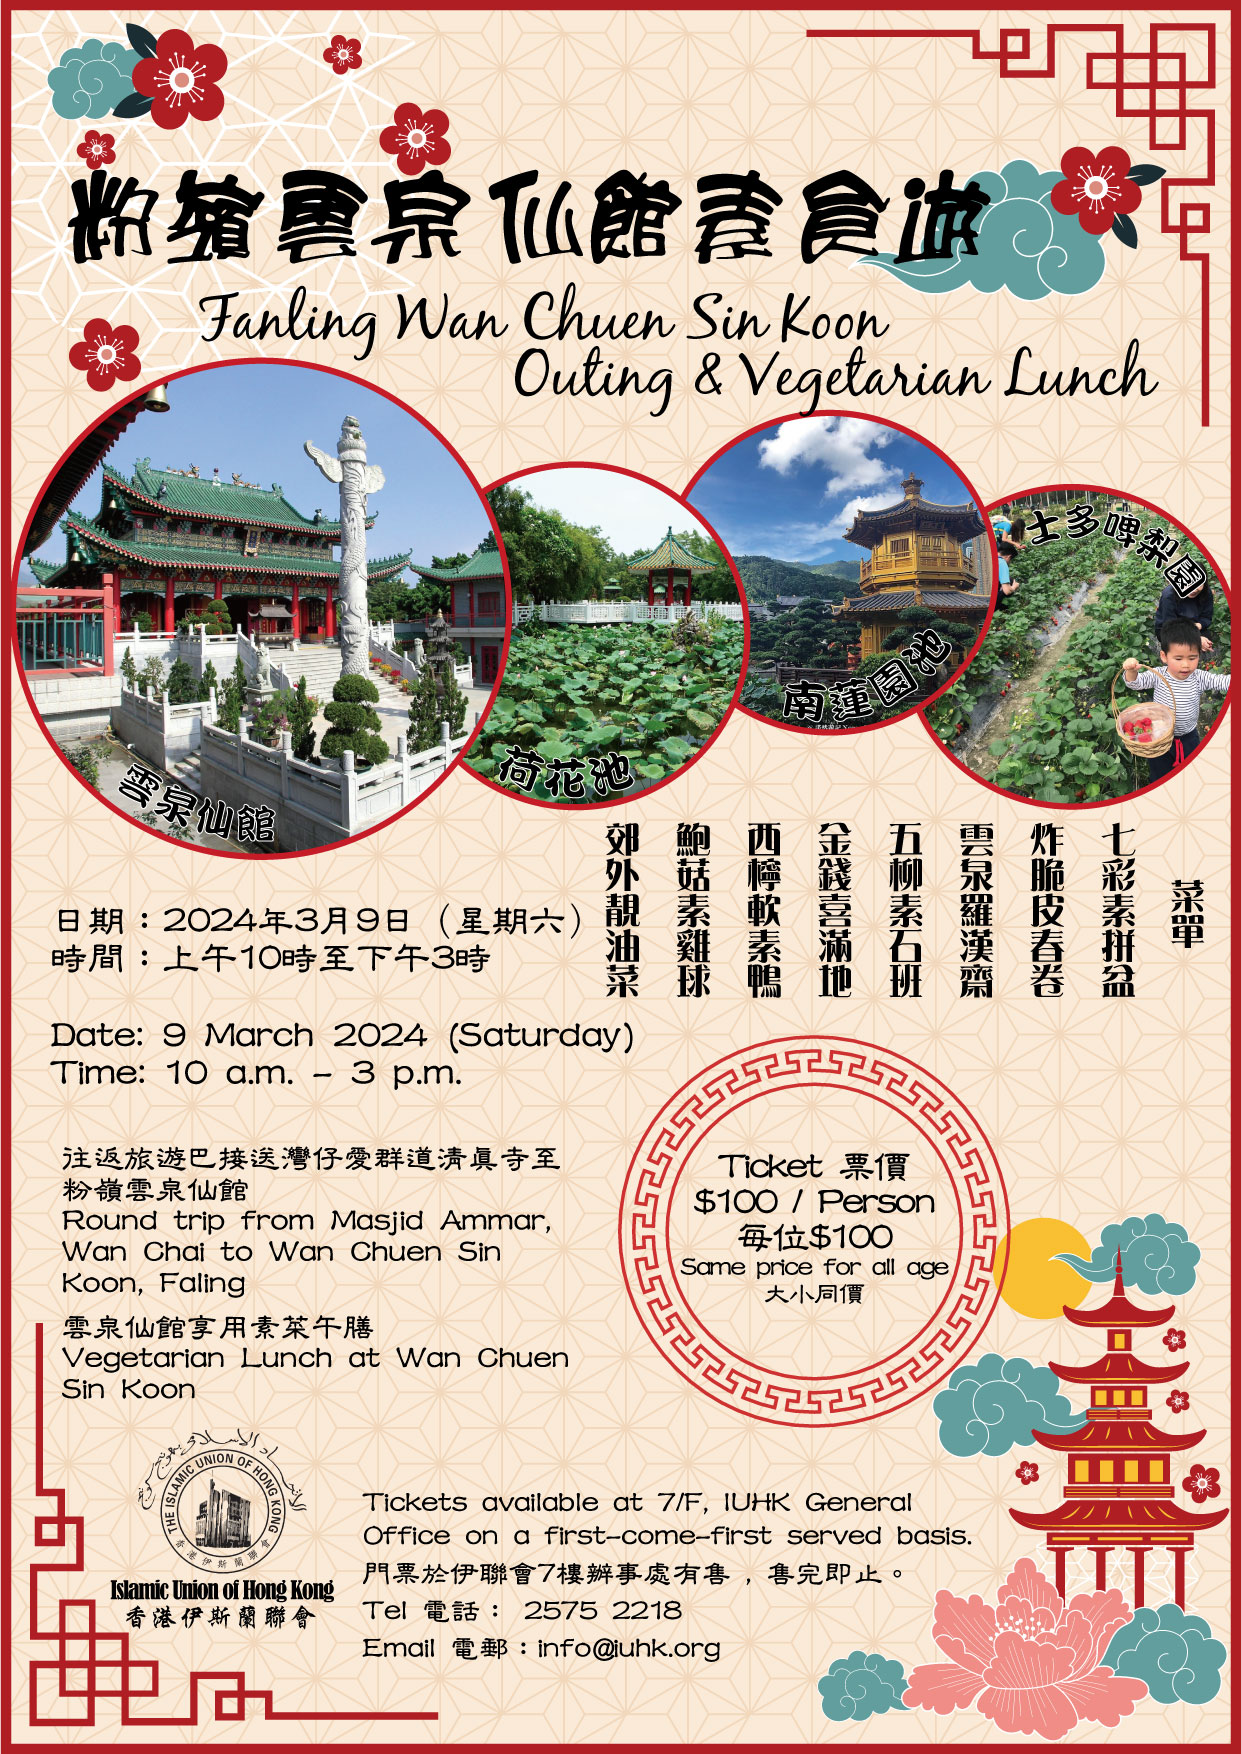 Fanling Wan Chuen Sin Koon Outing & Vegetarian Lunch